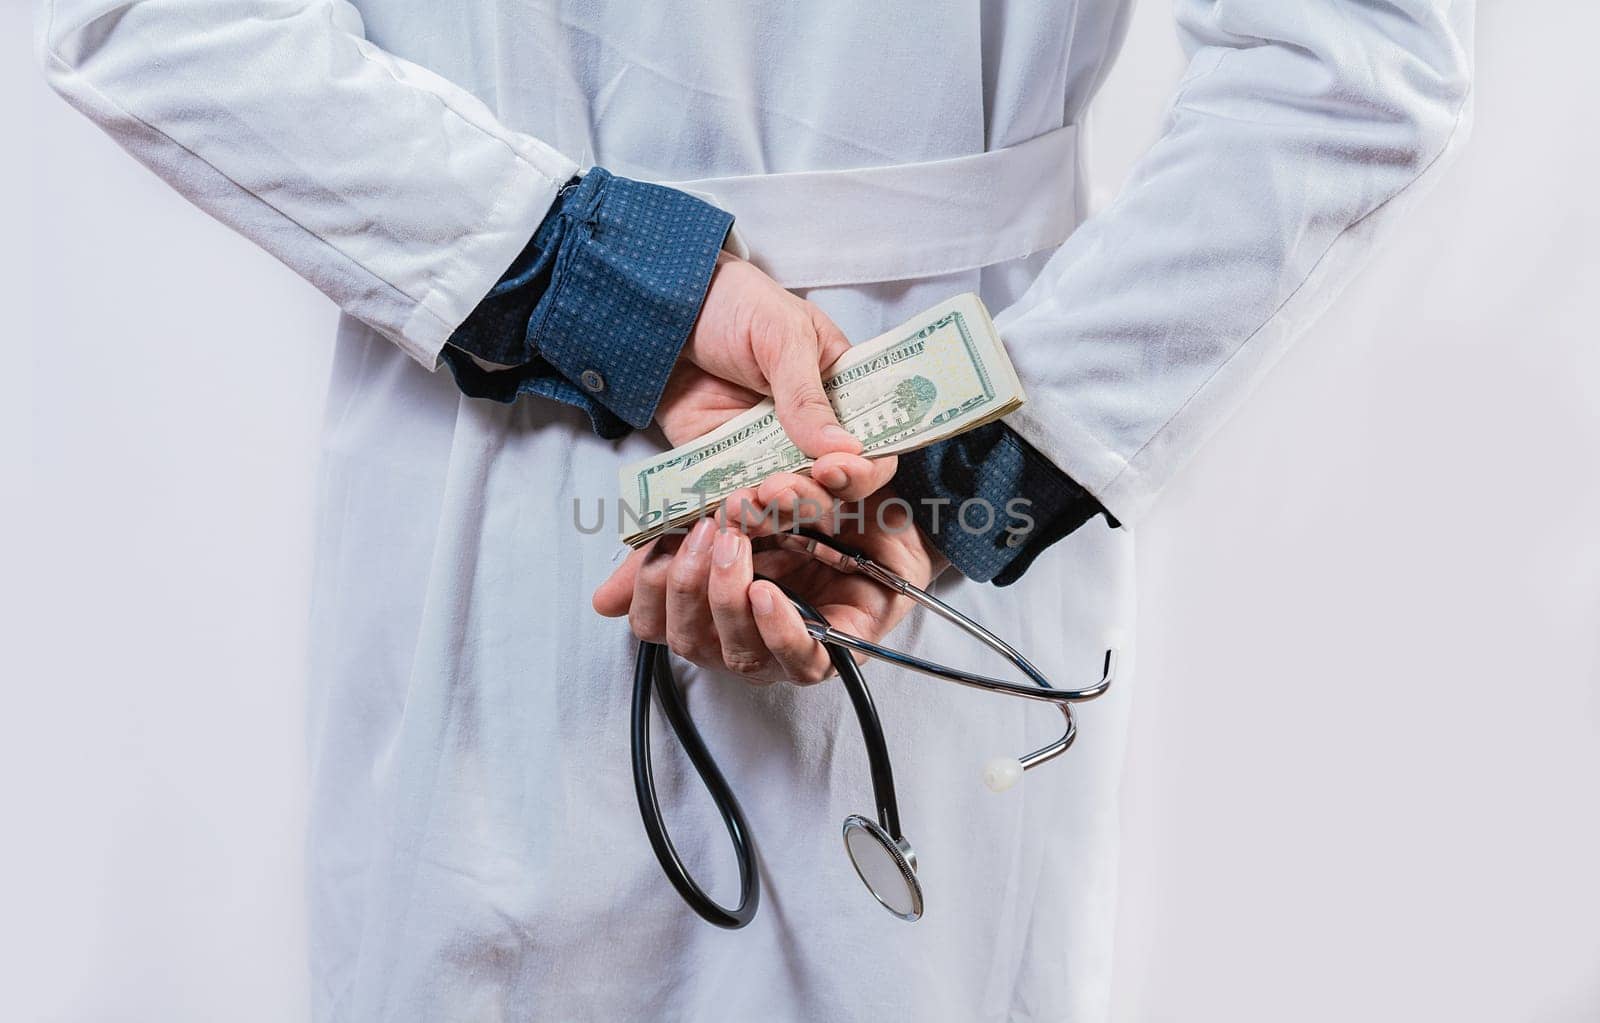 Dishonest doctor hiding money. Medical corruption and bribery concept, Corrupt doctor hiding money back